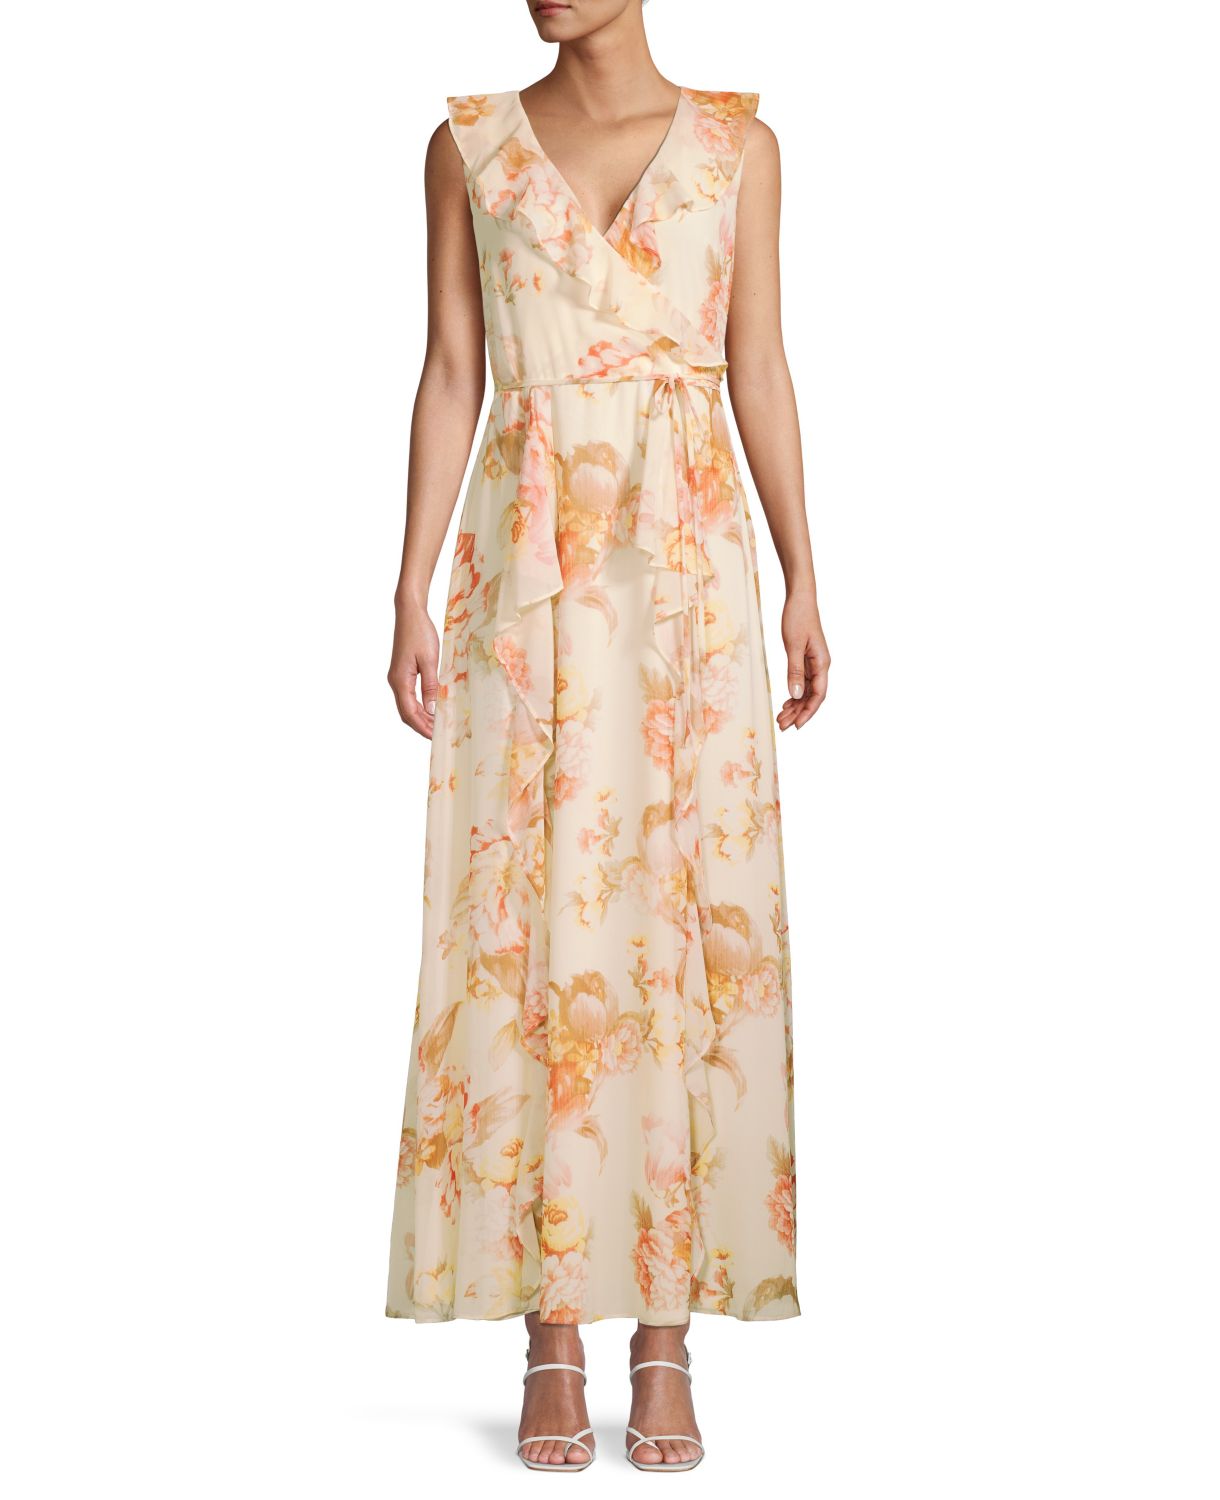 Платье с цветочным принтом и оборками на завязках на талии Karl Lagerfeld Paris